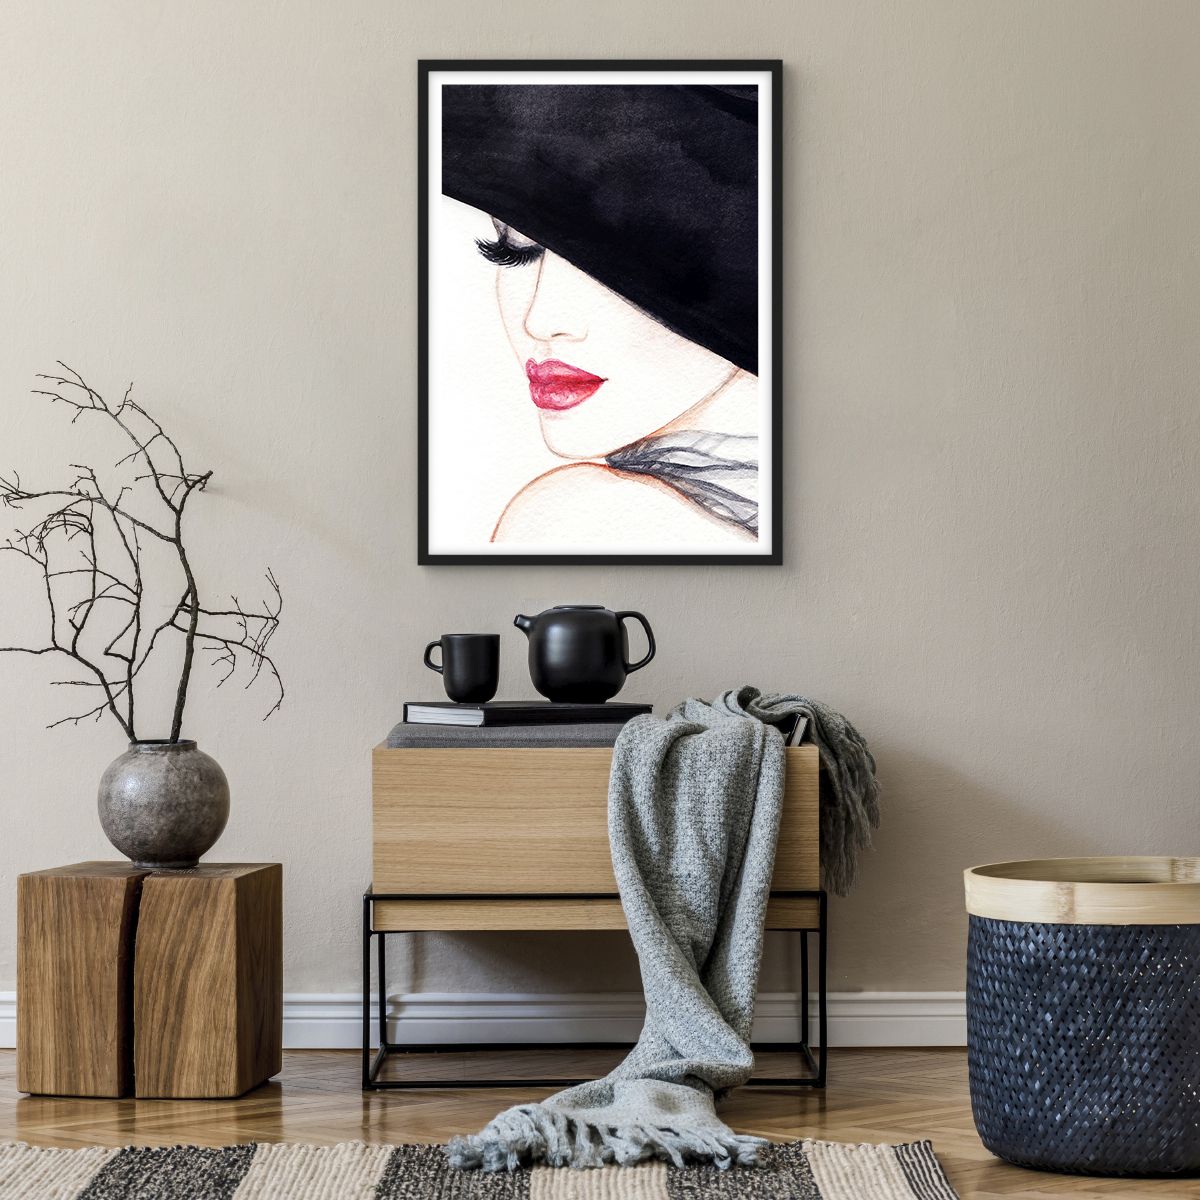 Poster in einem schwarzem Rahmen Frau, Poster in einem schwarzem Rahmen Rote Lippen, Poster in einem schwarzem Rahmen Schwarzer Hut, Poster in einem schwarzem Rahmen Kunst, Poster in einem schwarzem Rahmen Geheimnisvolles Gesicht